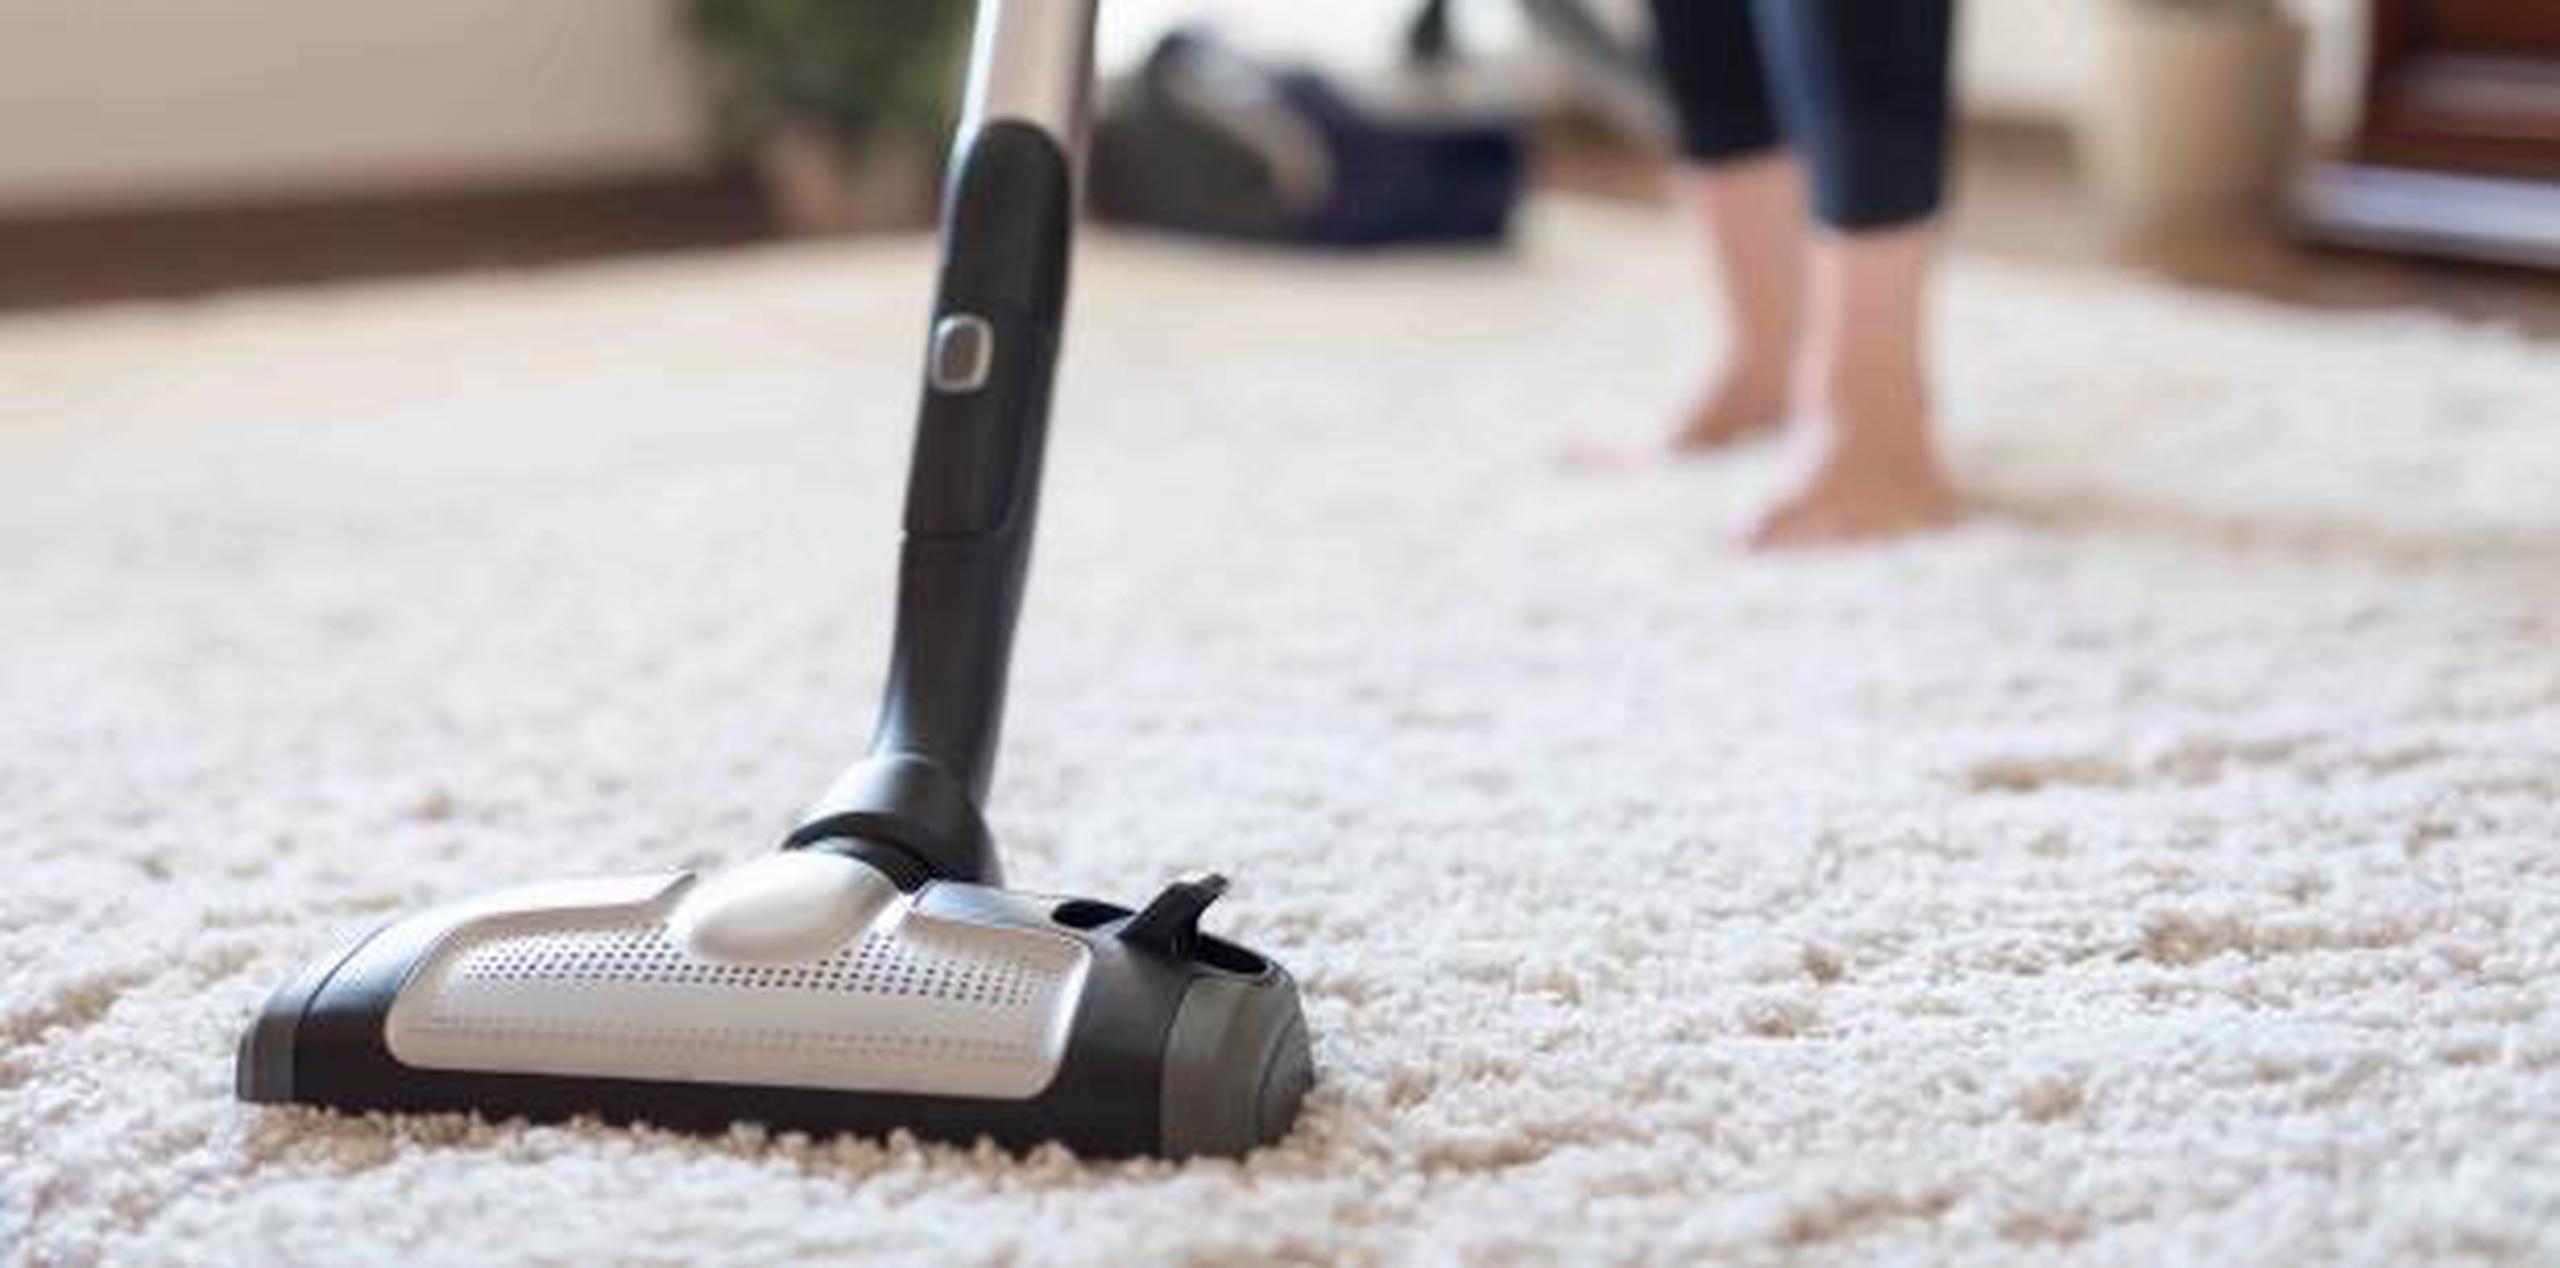 Las alfombras desprenden gases que pueden provocar dolor de cabeza y secreción nasal. (Shutterstock)